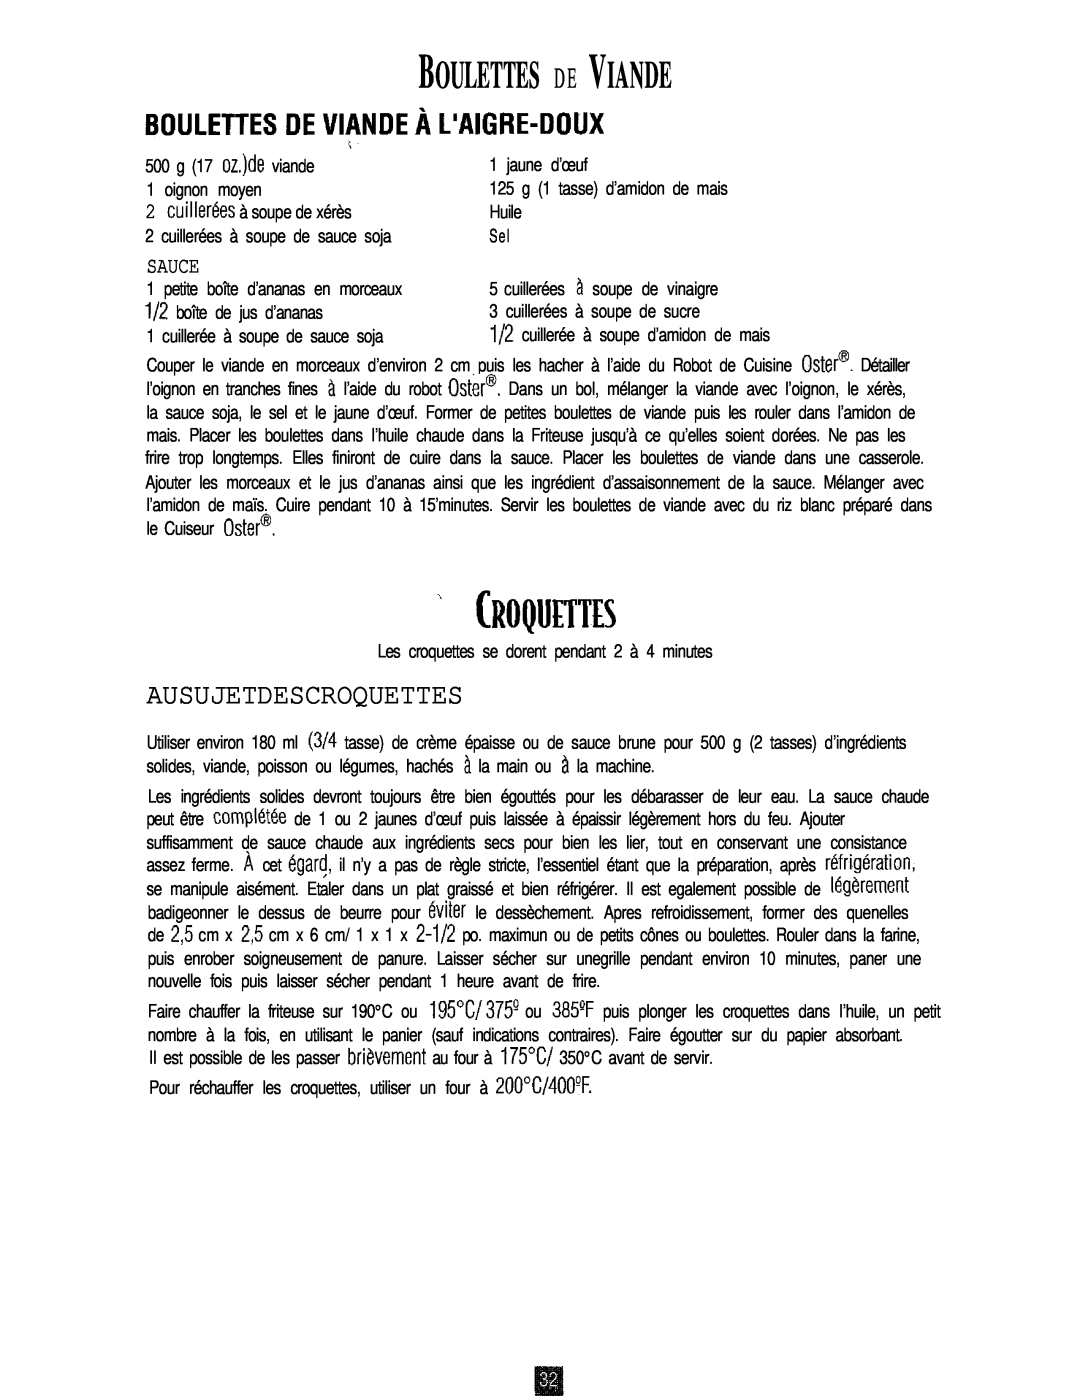 Oster 3246 manual Boulettes D E Viande, Croquettes, Ausujetdescroquettes, Sauce, 125 g 1 tasse d’amidon de mais, oignon 